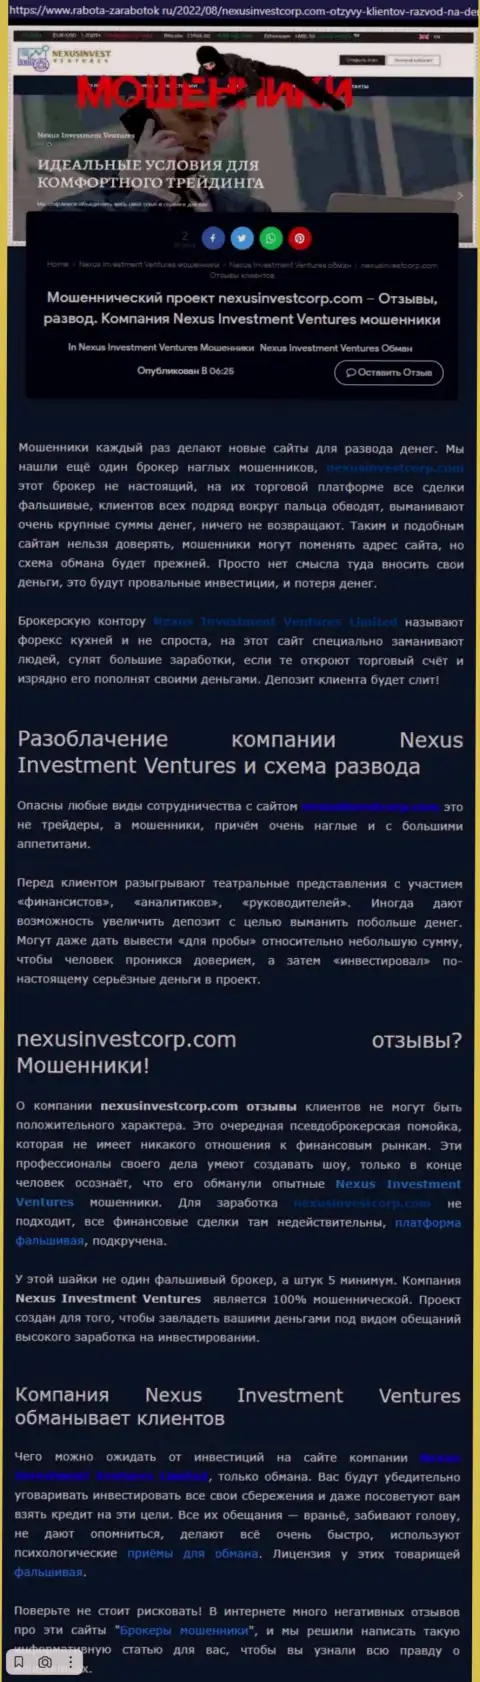 Если же нет желания оказаться еще одной жертвой Nexus Investment Ventures, держитесь от них как можно дальше (обзор противозаконных действий)